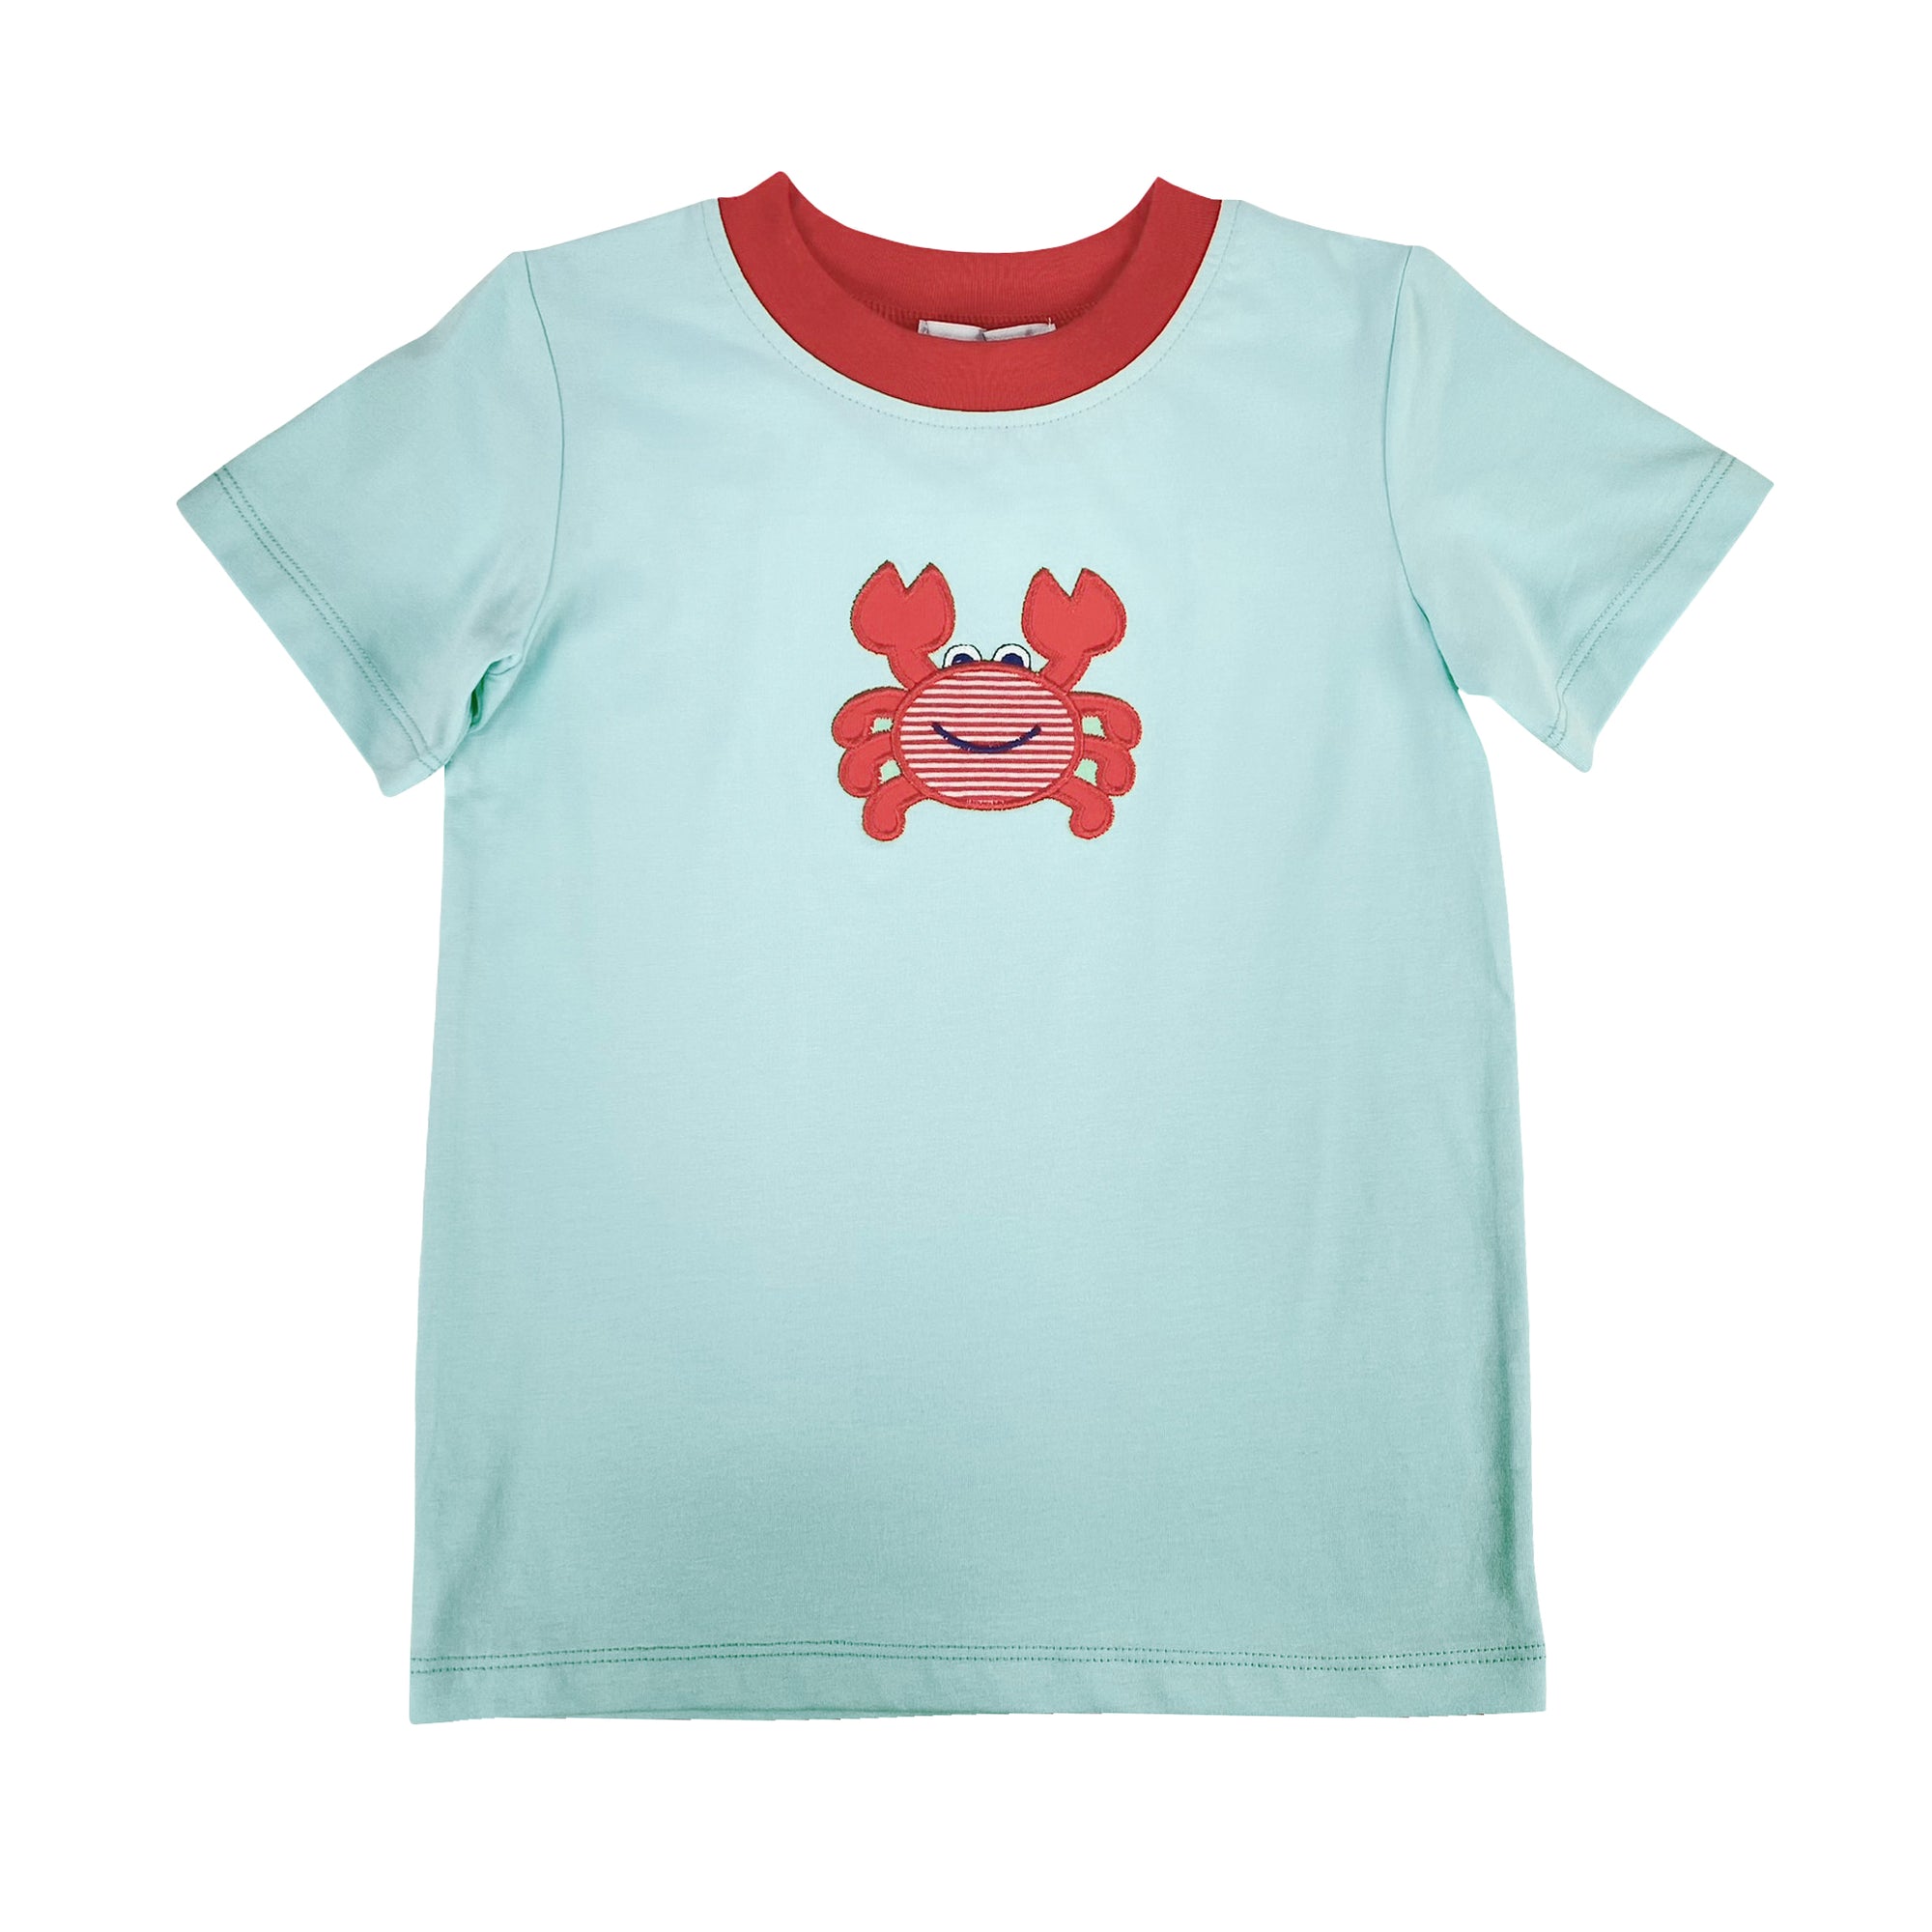 Crab Applique Boy's T-Shirt